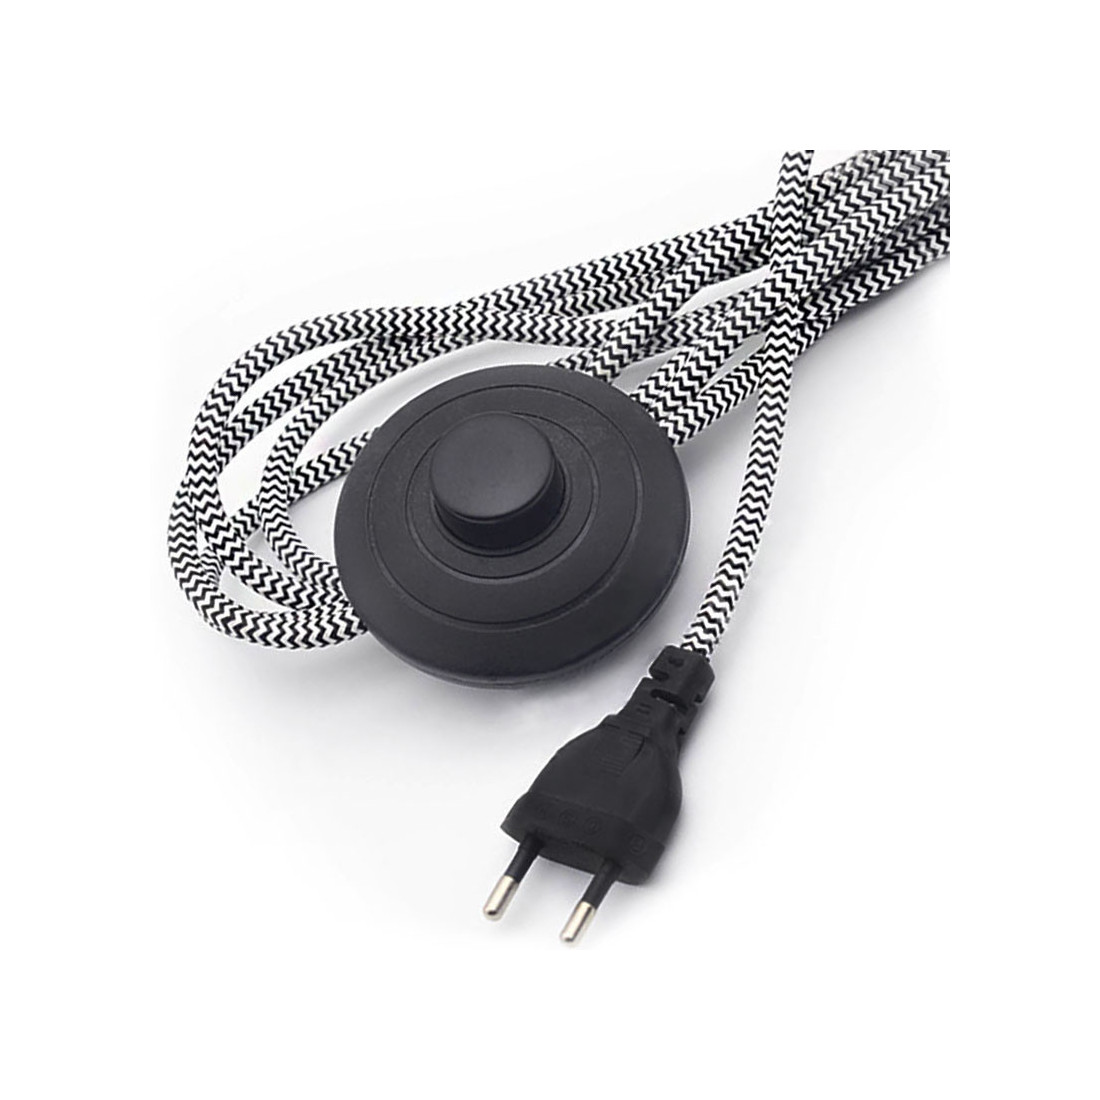 Câble électrique blanc avec Douille E14 et interrupteur, longueur